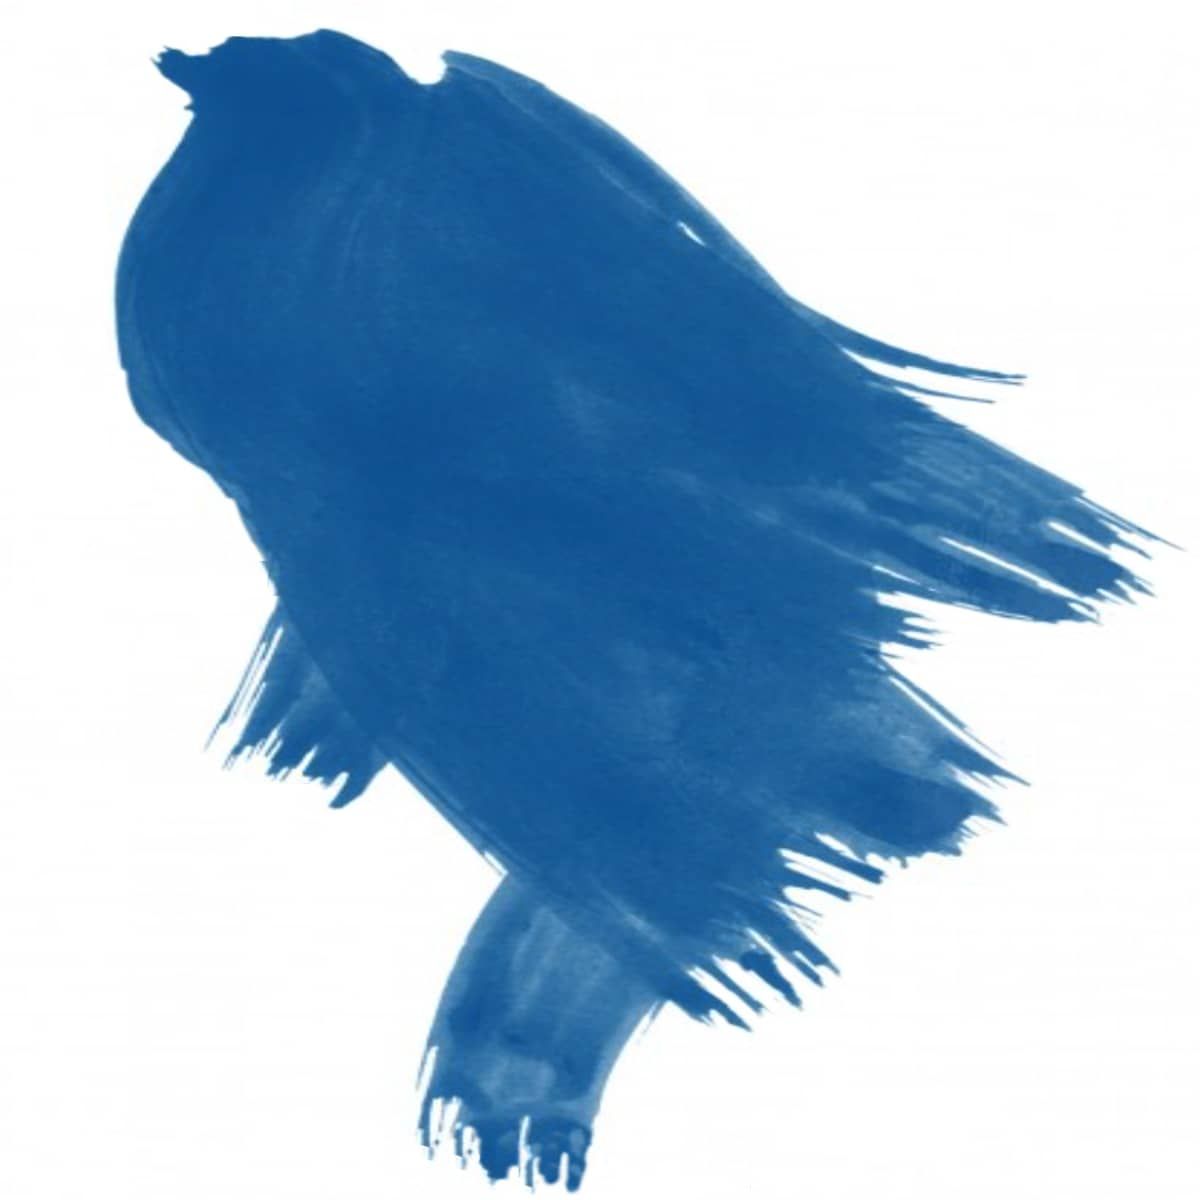 Daler-Rowney F.W. Acrylic Ink 1oz Bottle Rowney Blue